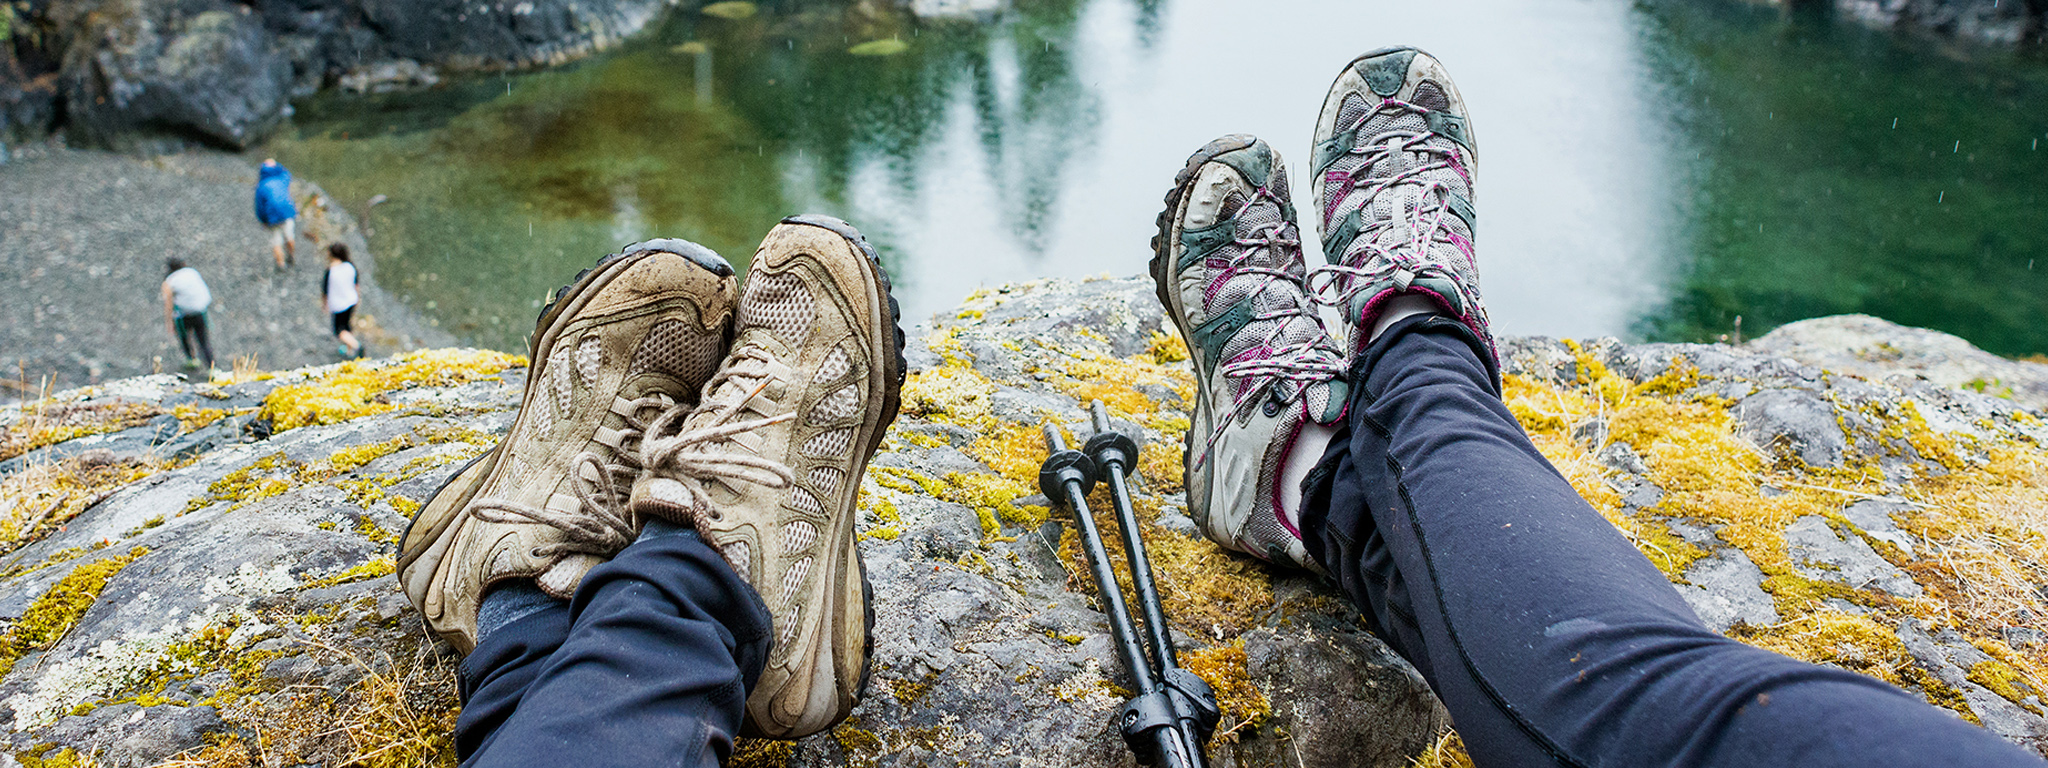 两个人的脚在俯瞰湖面的岩石边上晃来晃去。